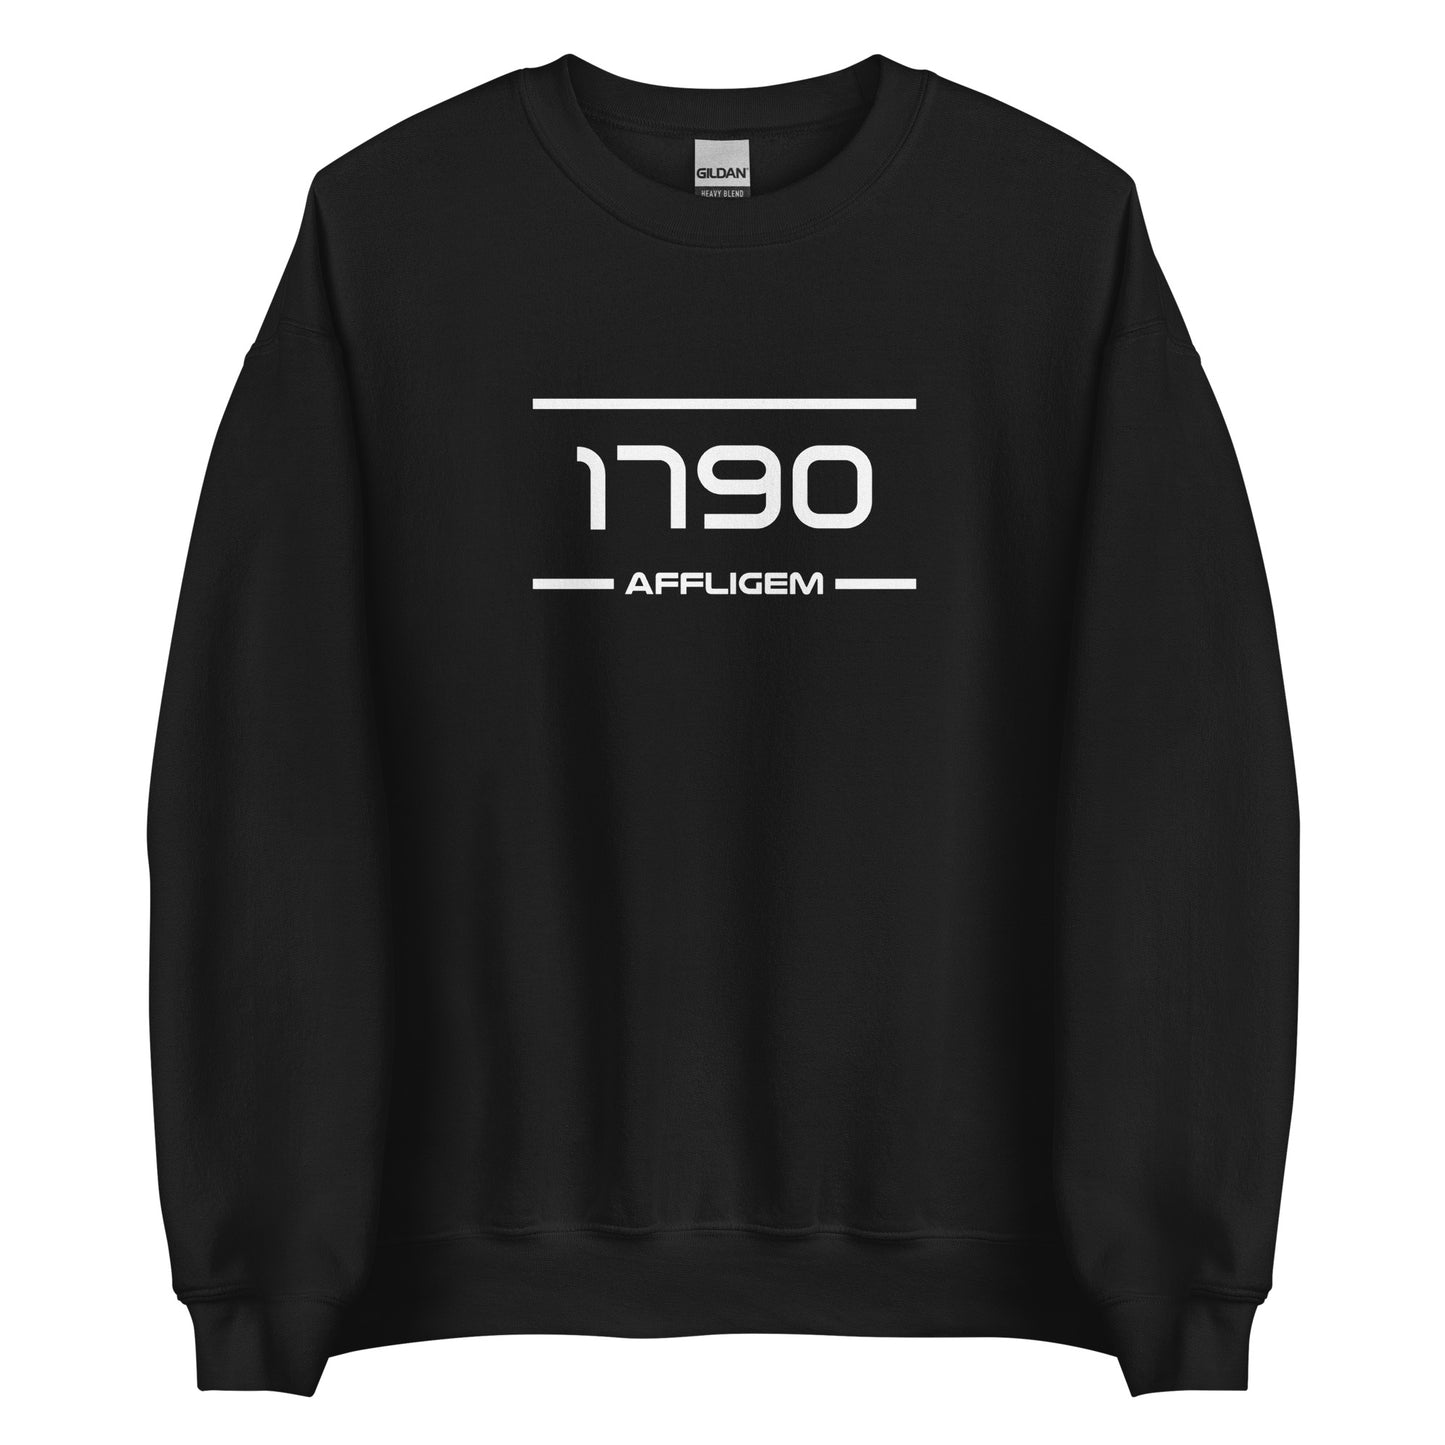 Sweater - 1790 - Affligem (M/V)